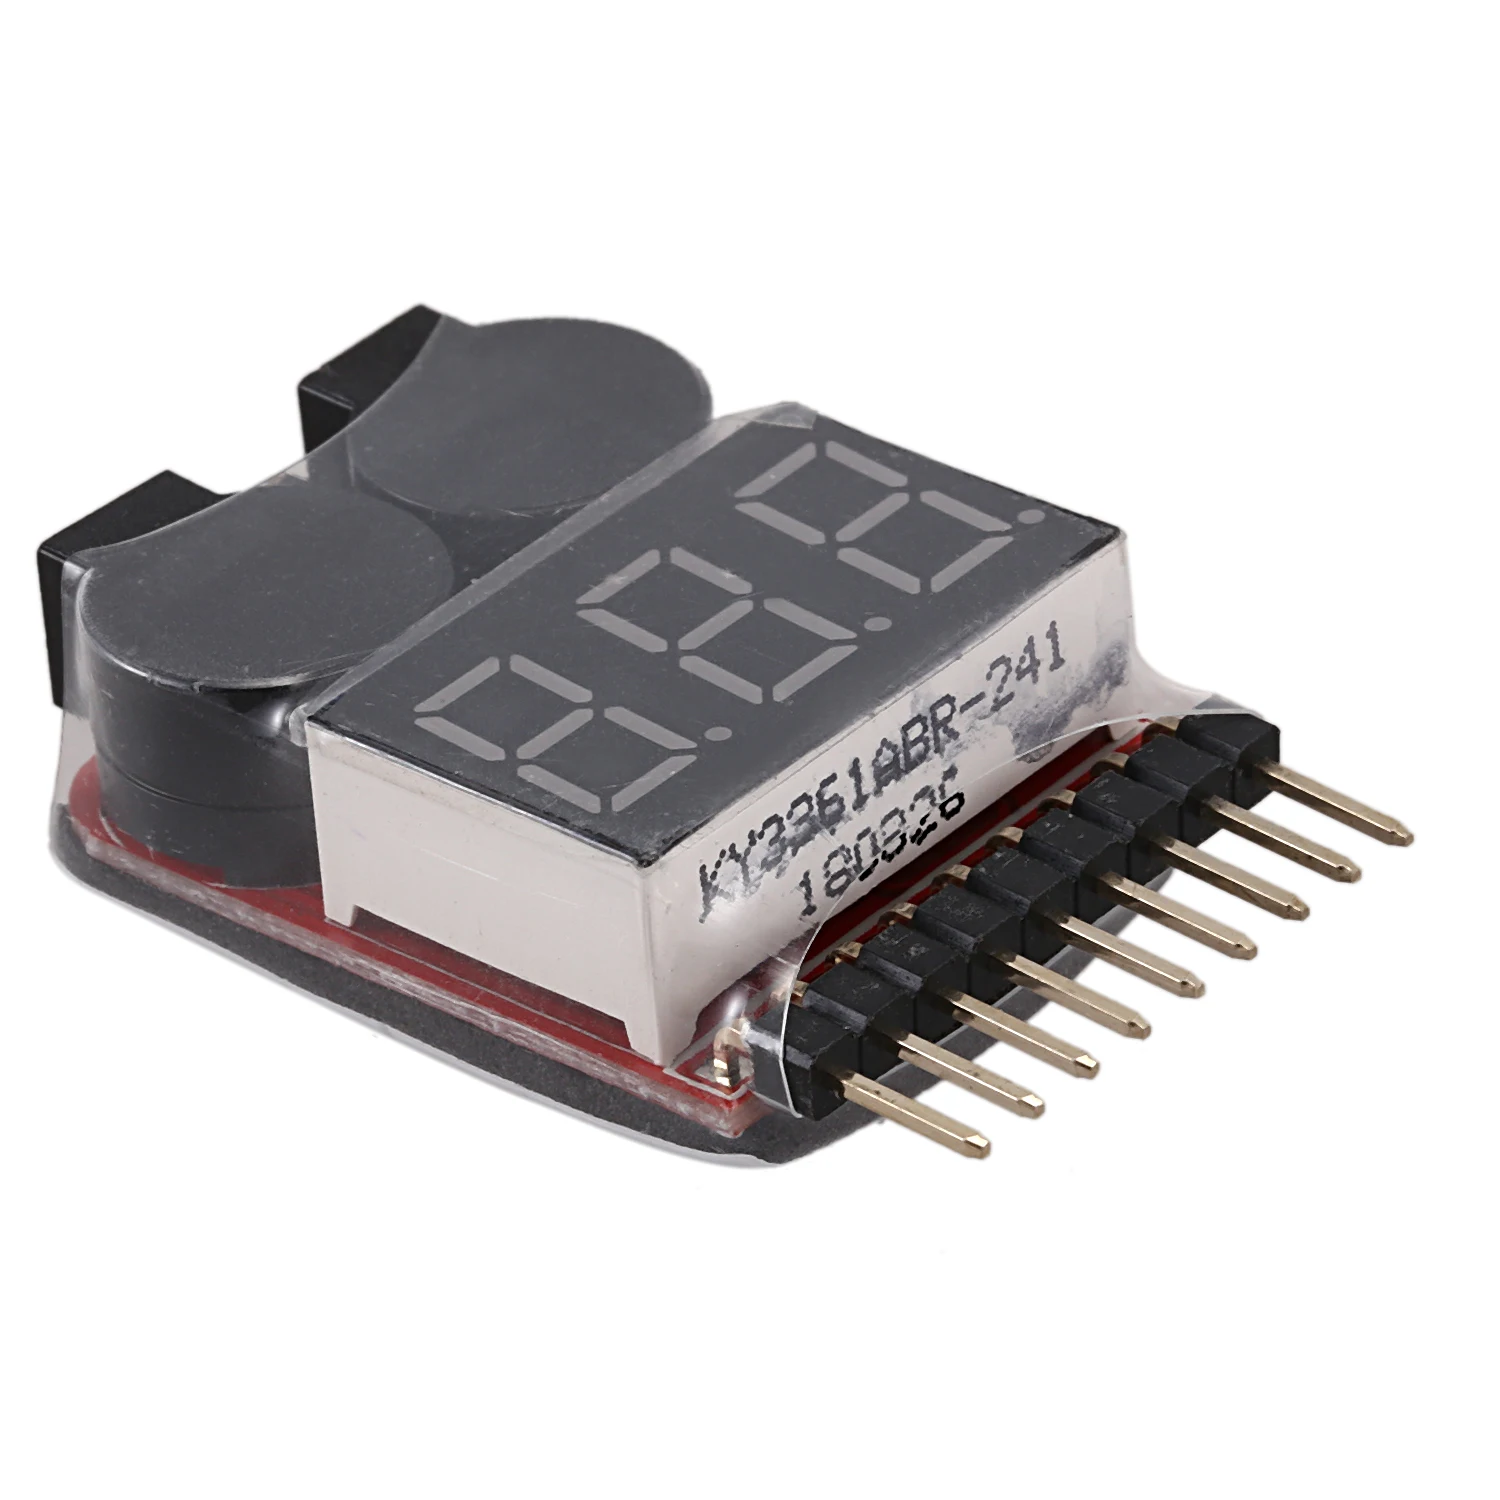 RC Lipo батарея низкого напряжения сигнализации 1 S-8 S зуммер Индикатор проверки светодиодный тестер